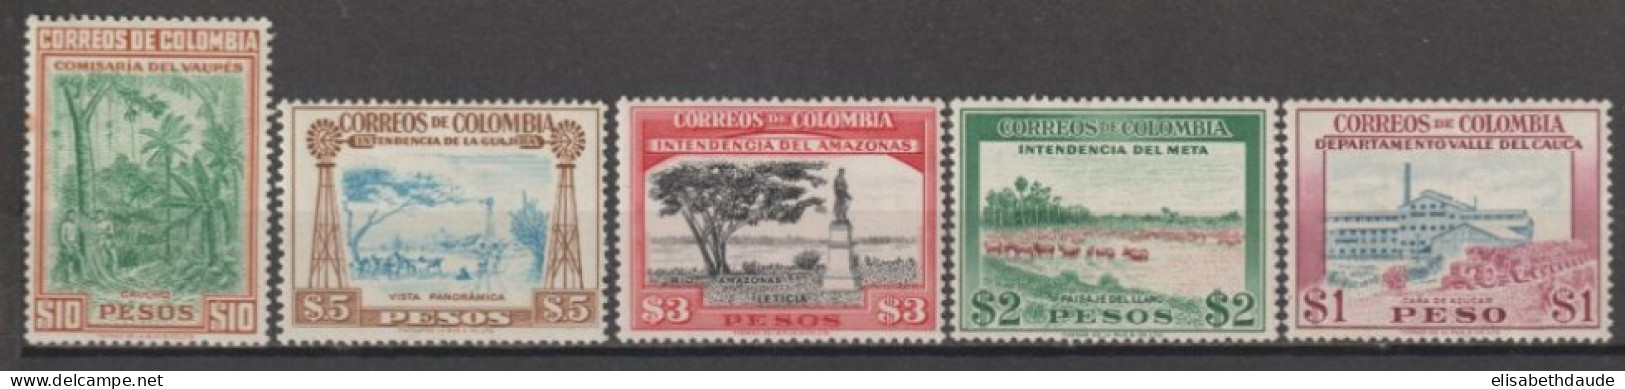 COLOMBIE - 1956 - YVERT N°526/530 ** MNH (526 * MH ET 530 INFIME ROUSSEUR SUR DENT) - COTE = 43.25 EUR. - Kolumbien